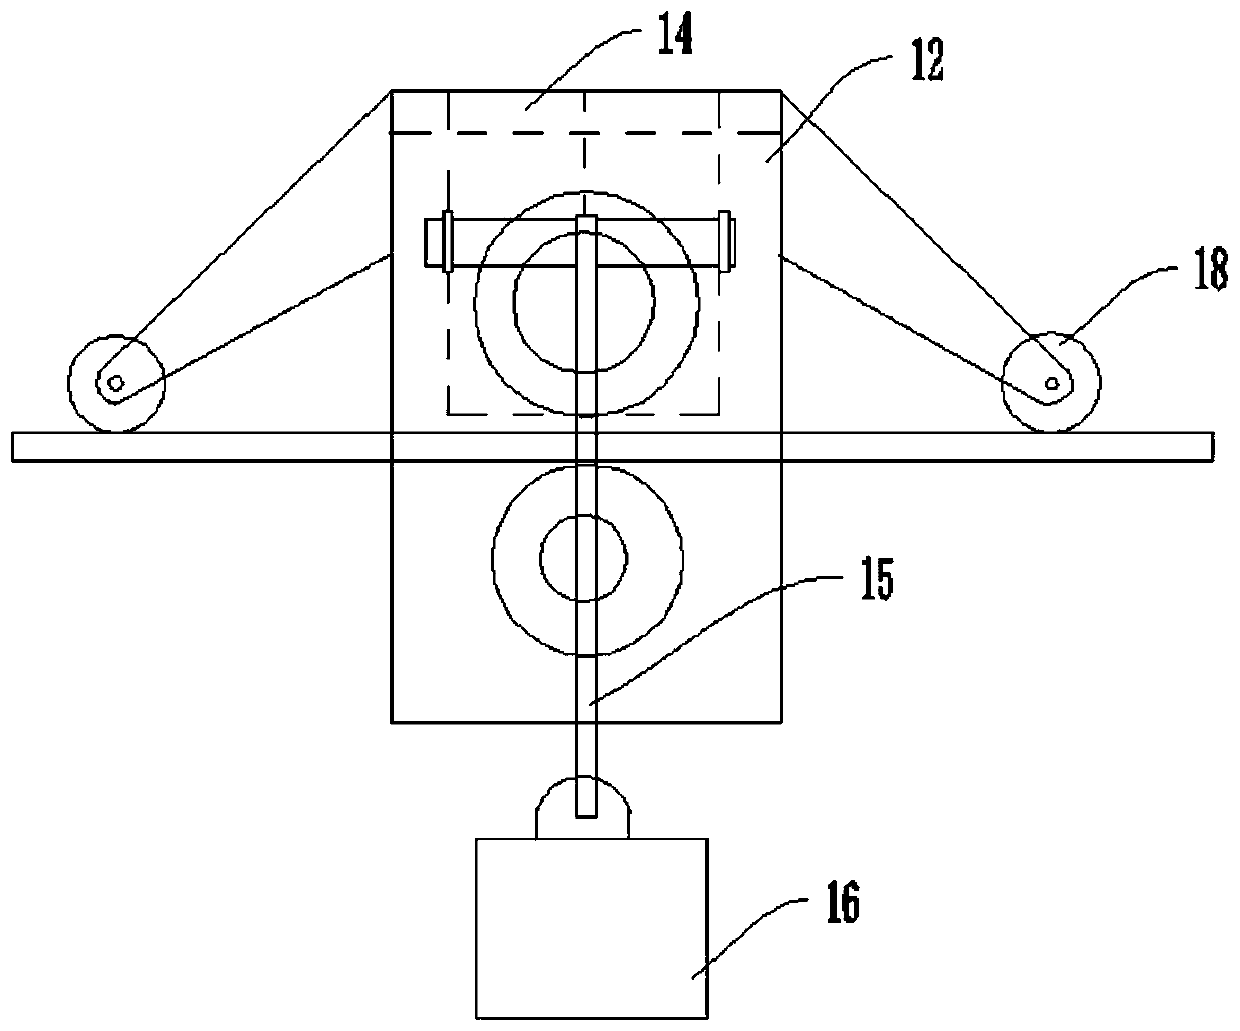 Steel sheet correction mechanism and method